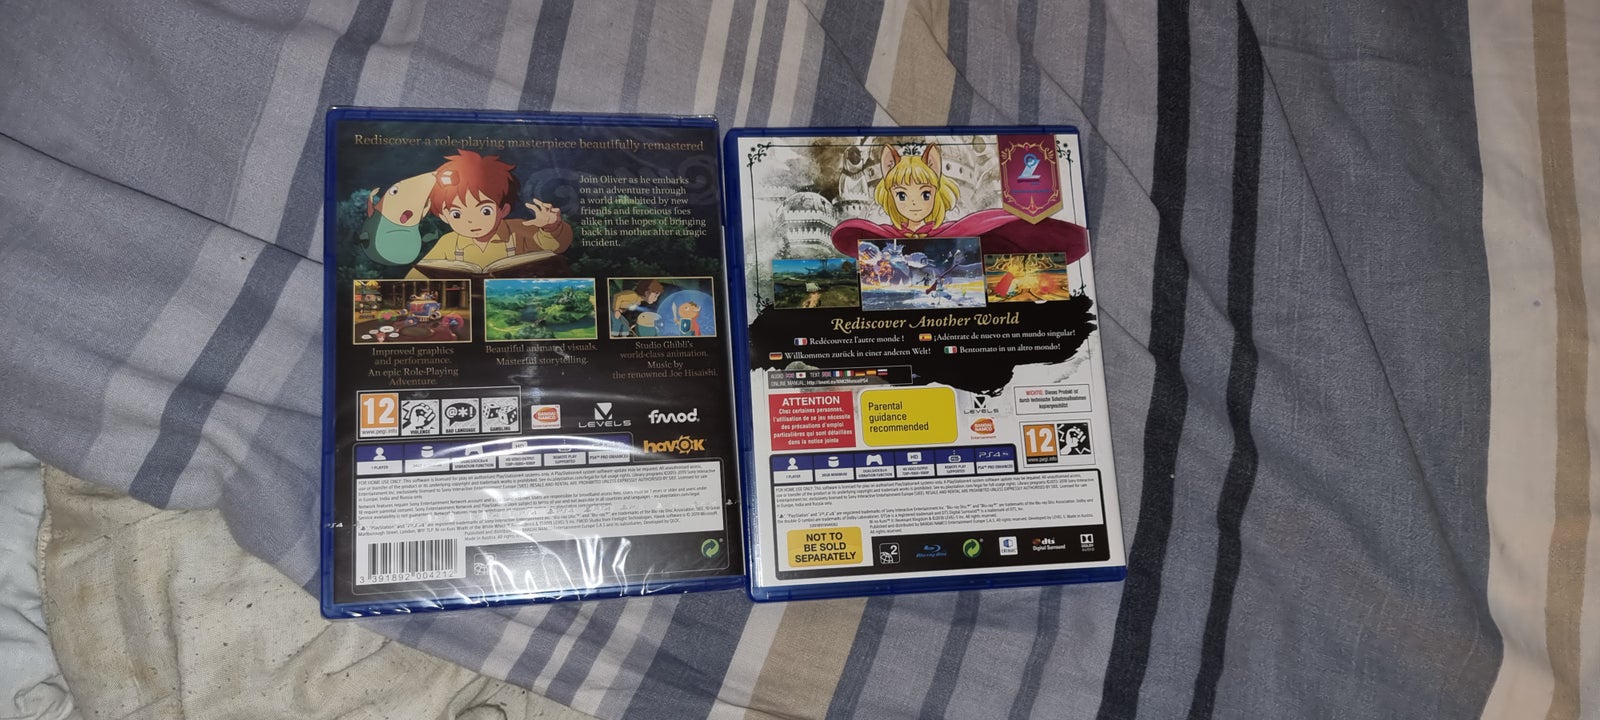 PS4 - Ni No Kuni 1 & 2: King's Edition, PS4